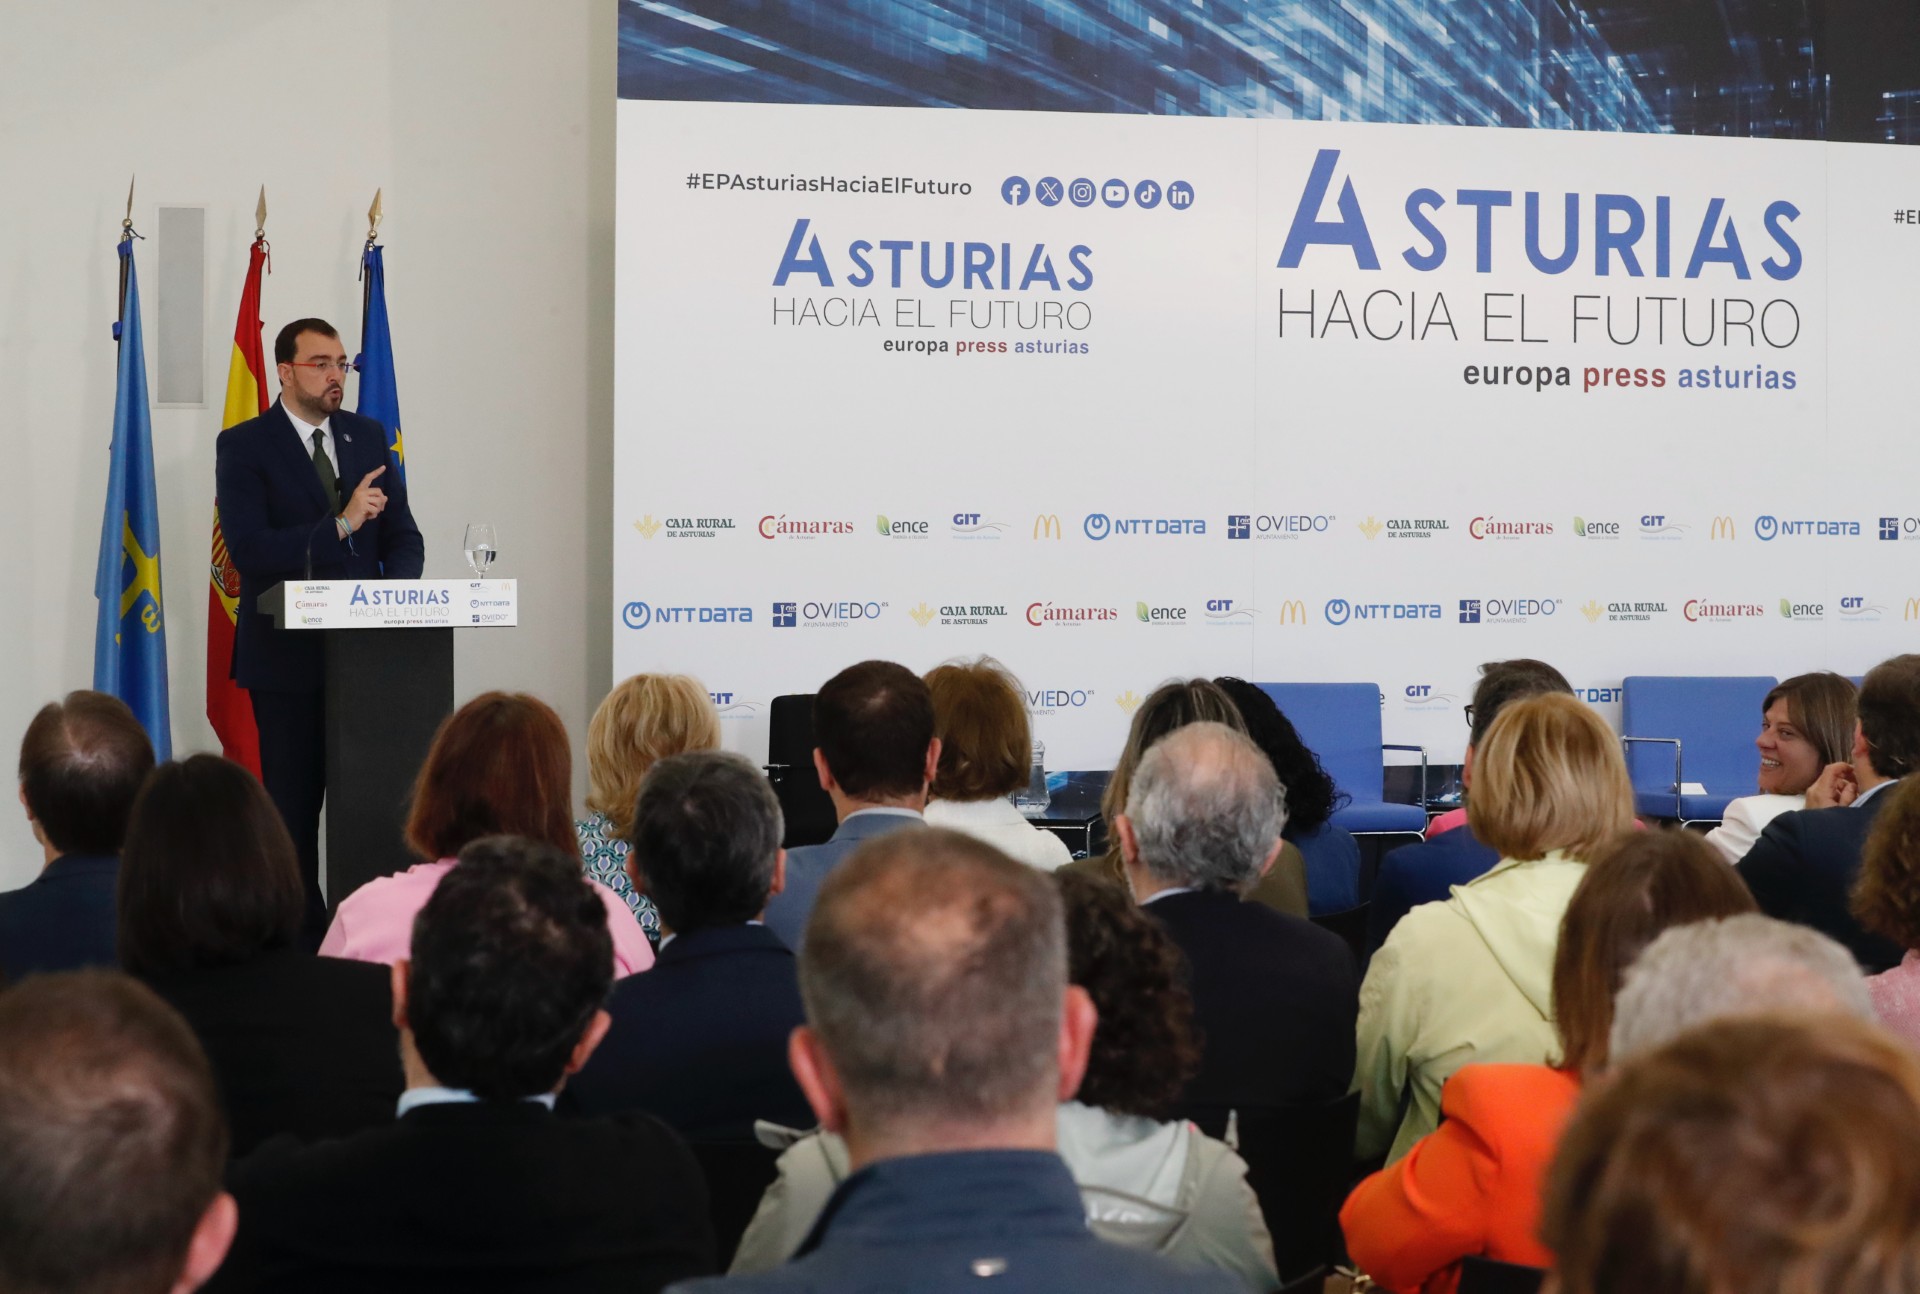 Imagen - Adrián Barbón: “Asturias avanza, y avanza bien. Hemos perdido el miedo a la transformación”